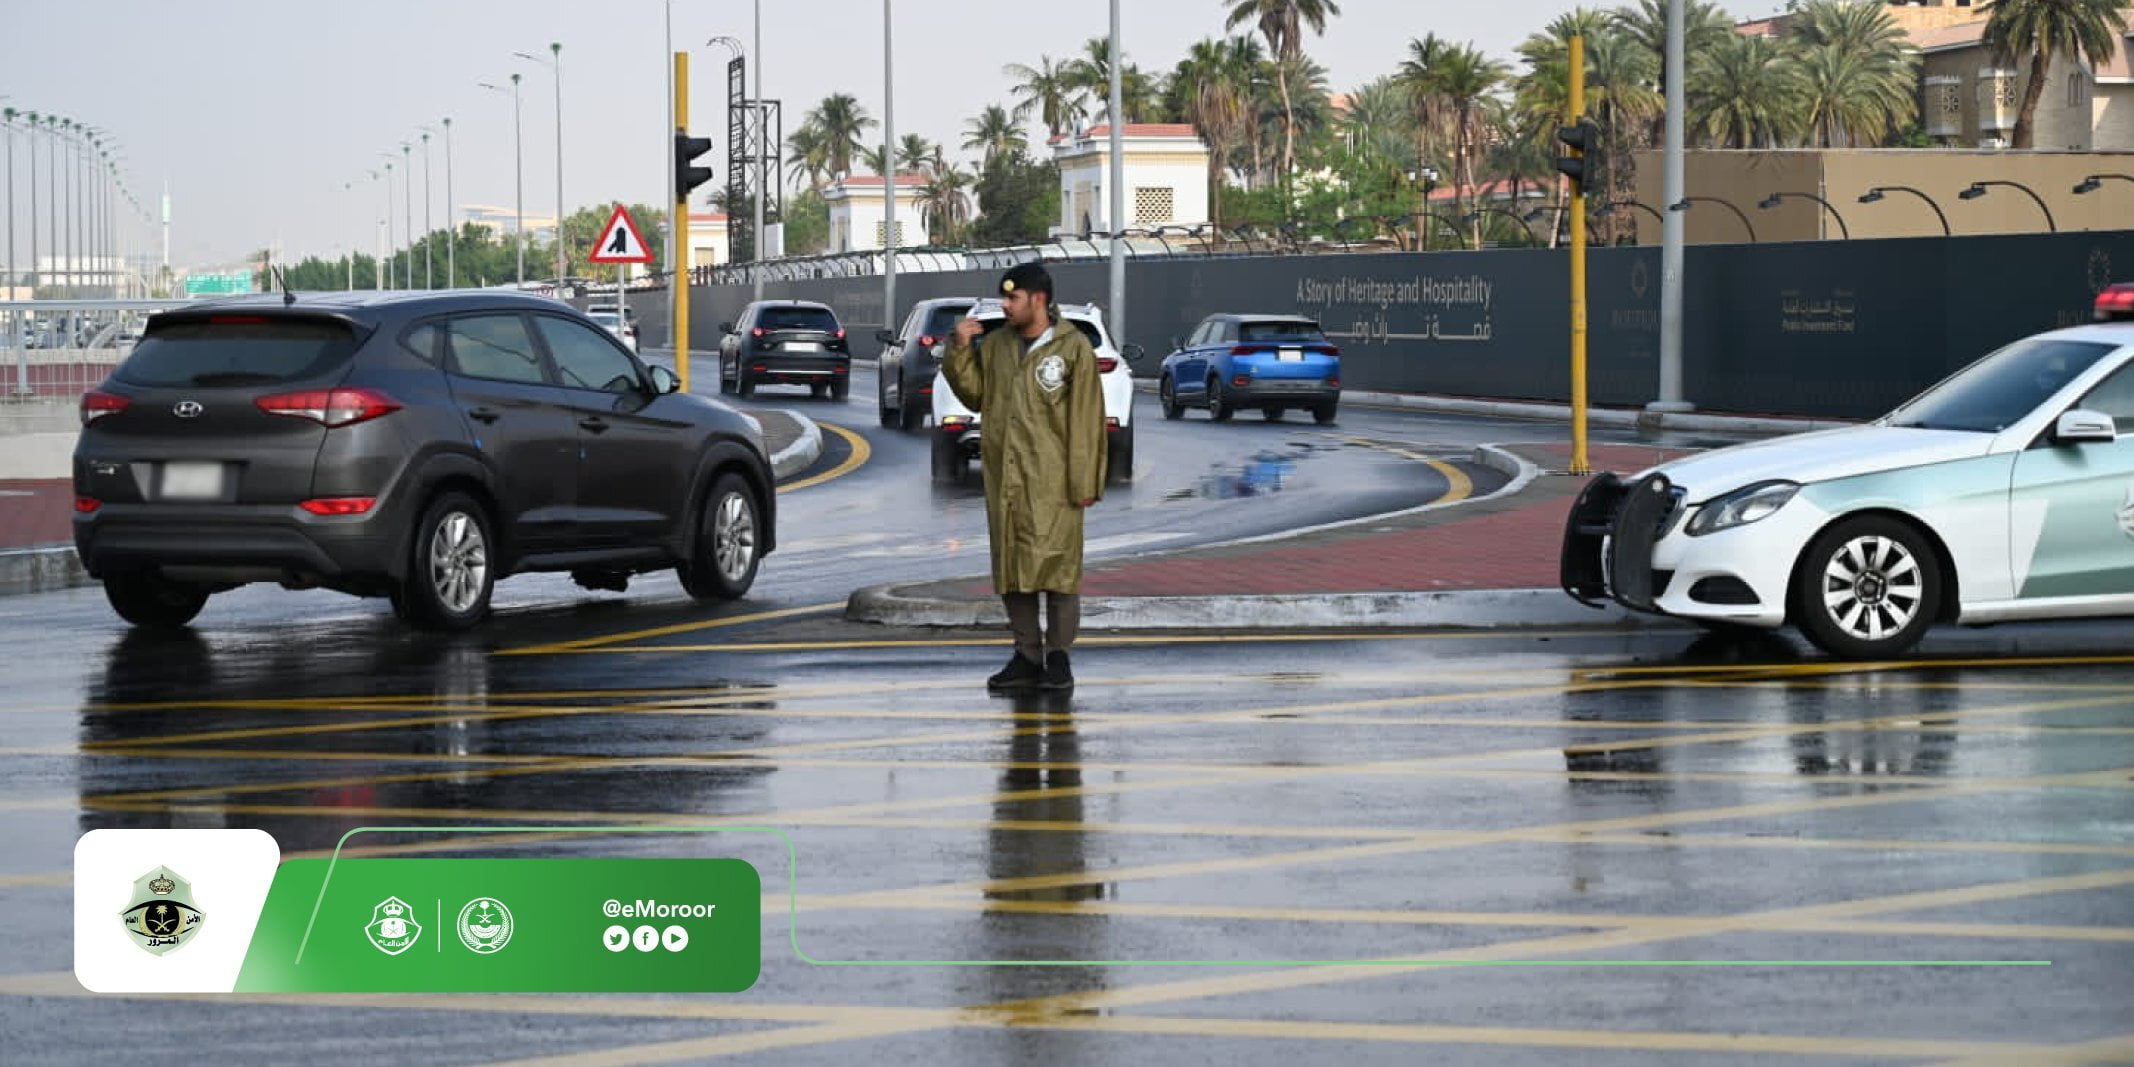 "المرور" يحذر من 5 سلوكيات خاطئة للقيادة أثناء هطول الأمطار 1